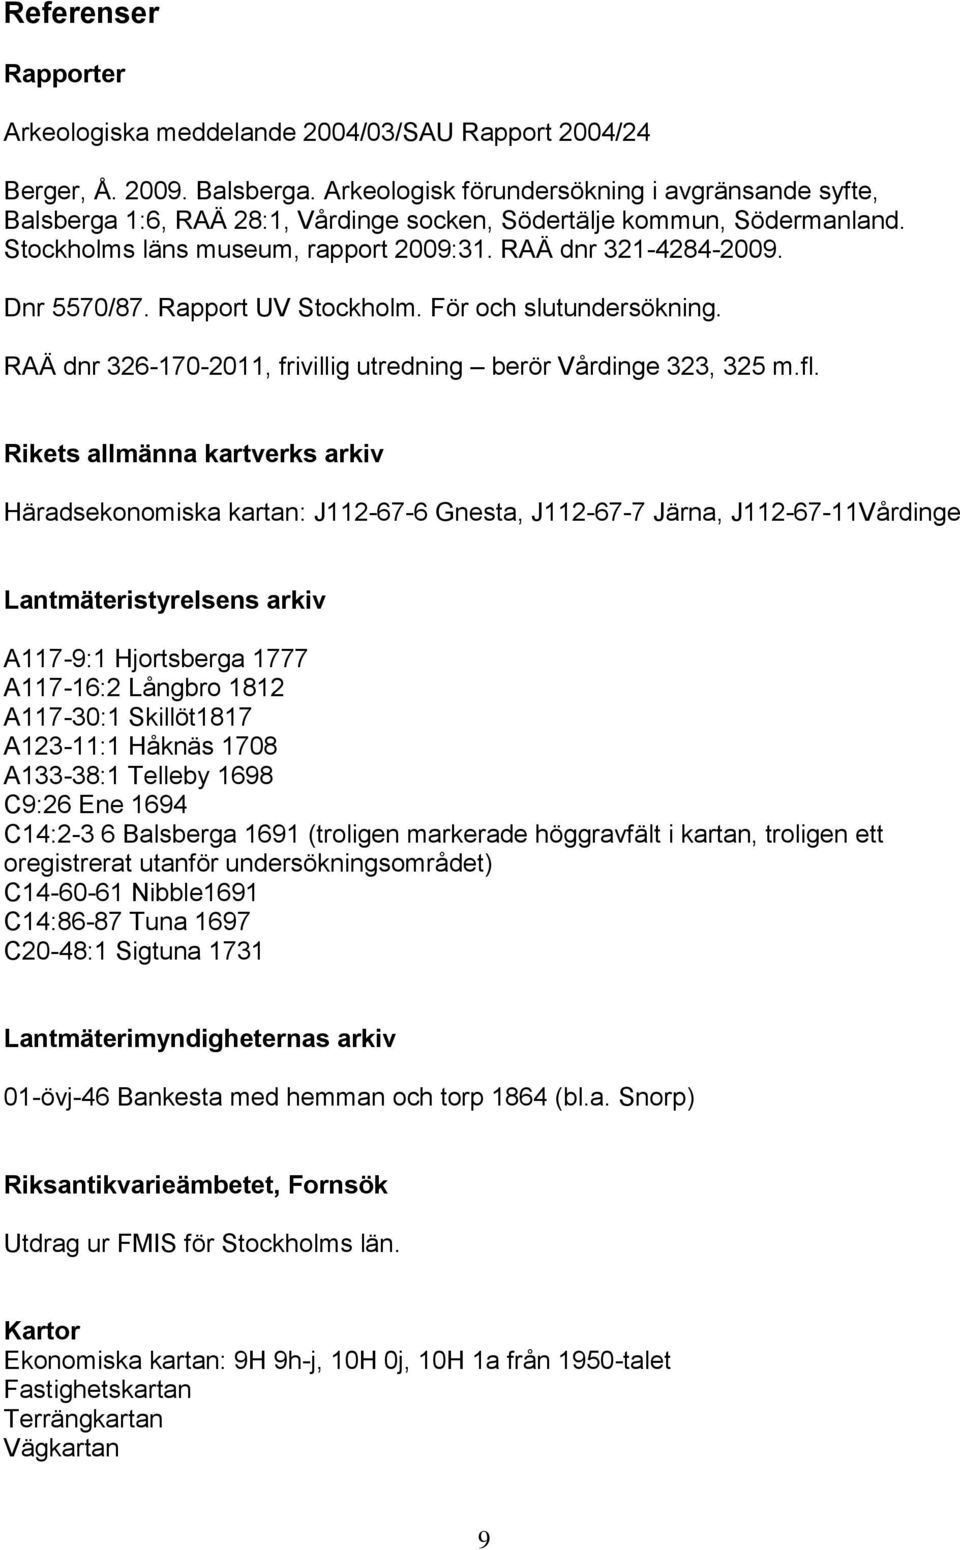 Rapport UV Stockholm. För och slutundersökning. RAÄ dnr 326-170-2011, frivillig utredning berör Vårdinge 323, 325 m.fl.